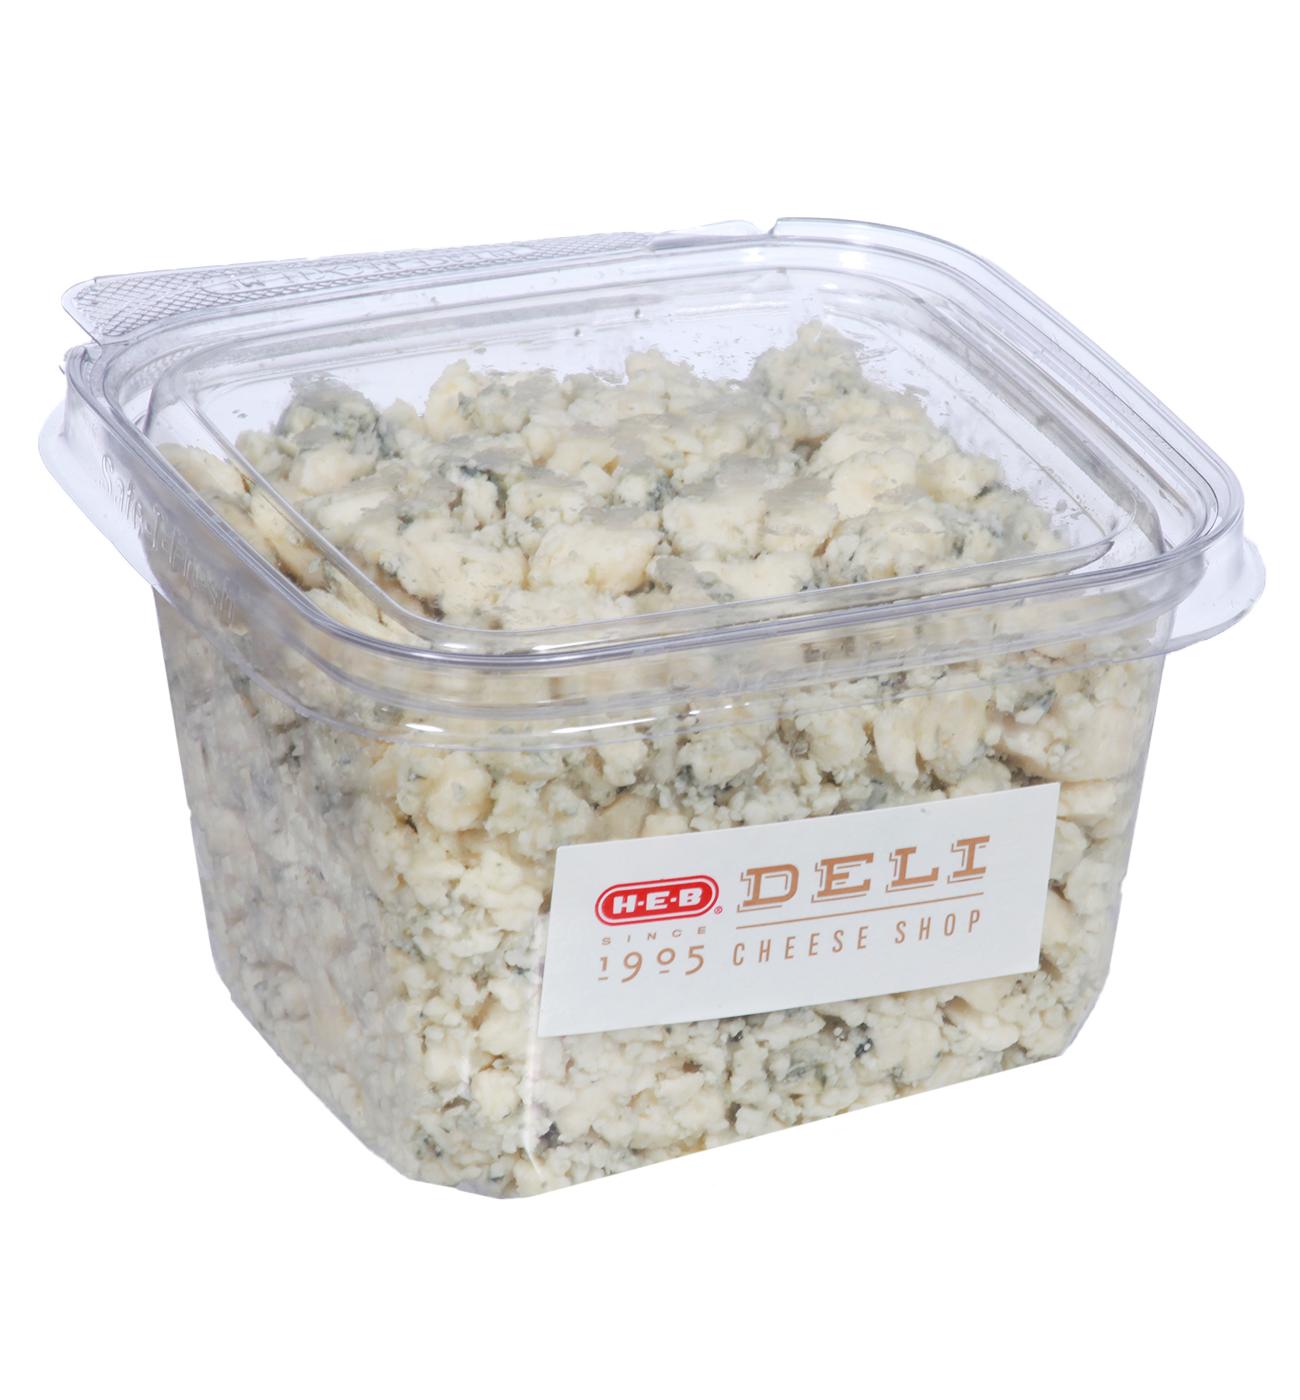 H-E-B Deli Blue Cheese Crumbles; image 3 of 3